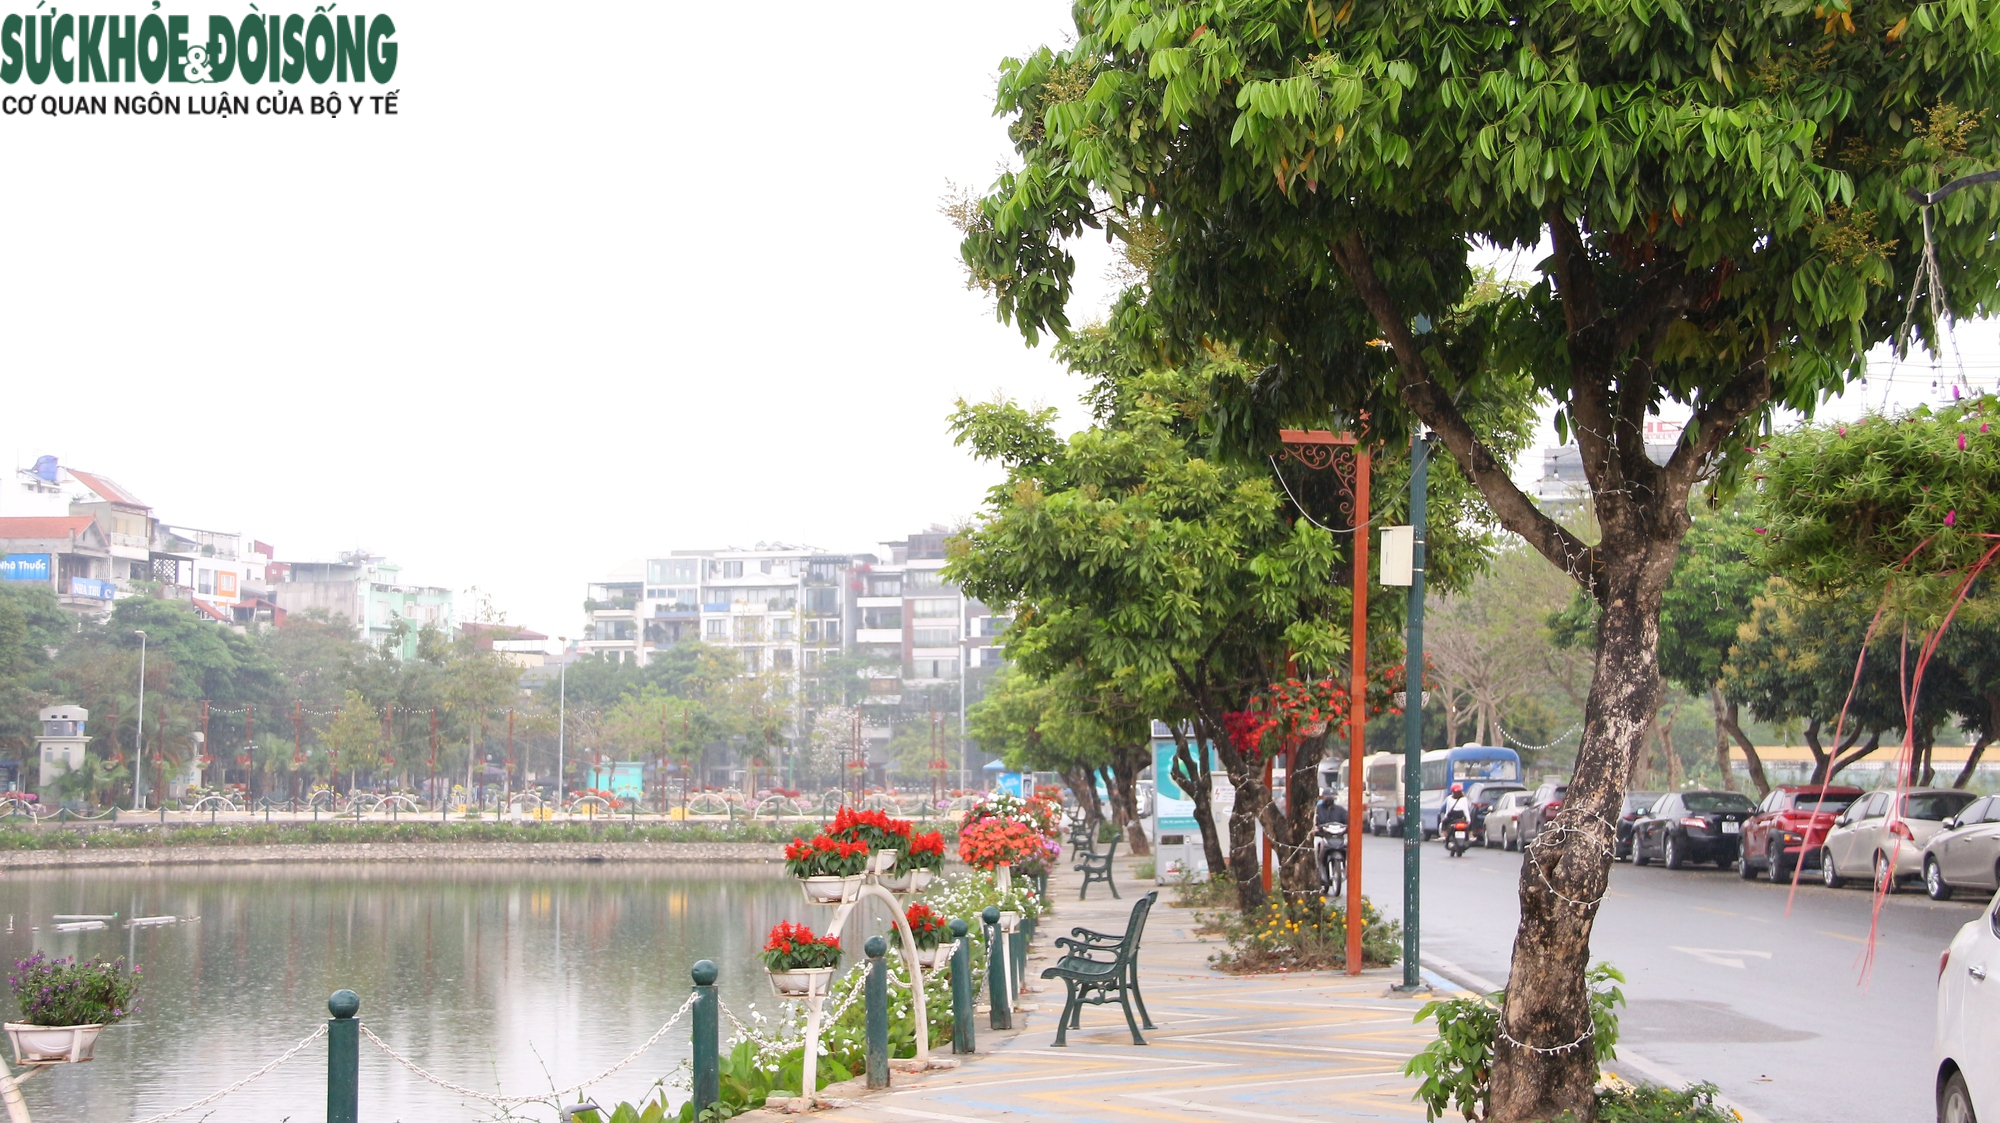 Hàng cây chục năm tuổi trên phố đi bộ Trịnh Công Sơn sắp bị di dời - Ảnh 3.